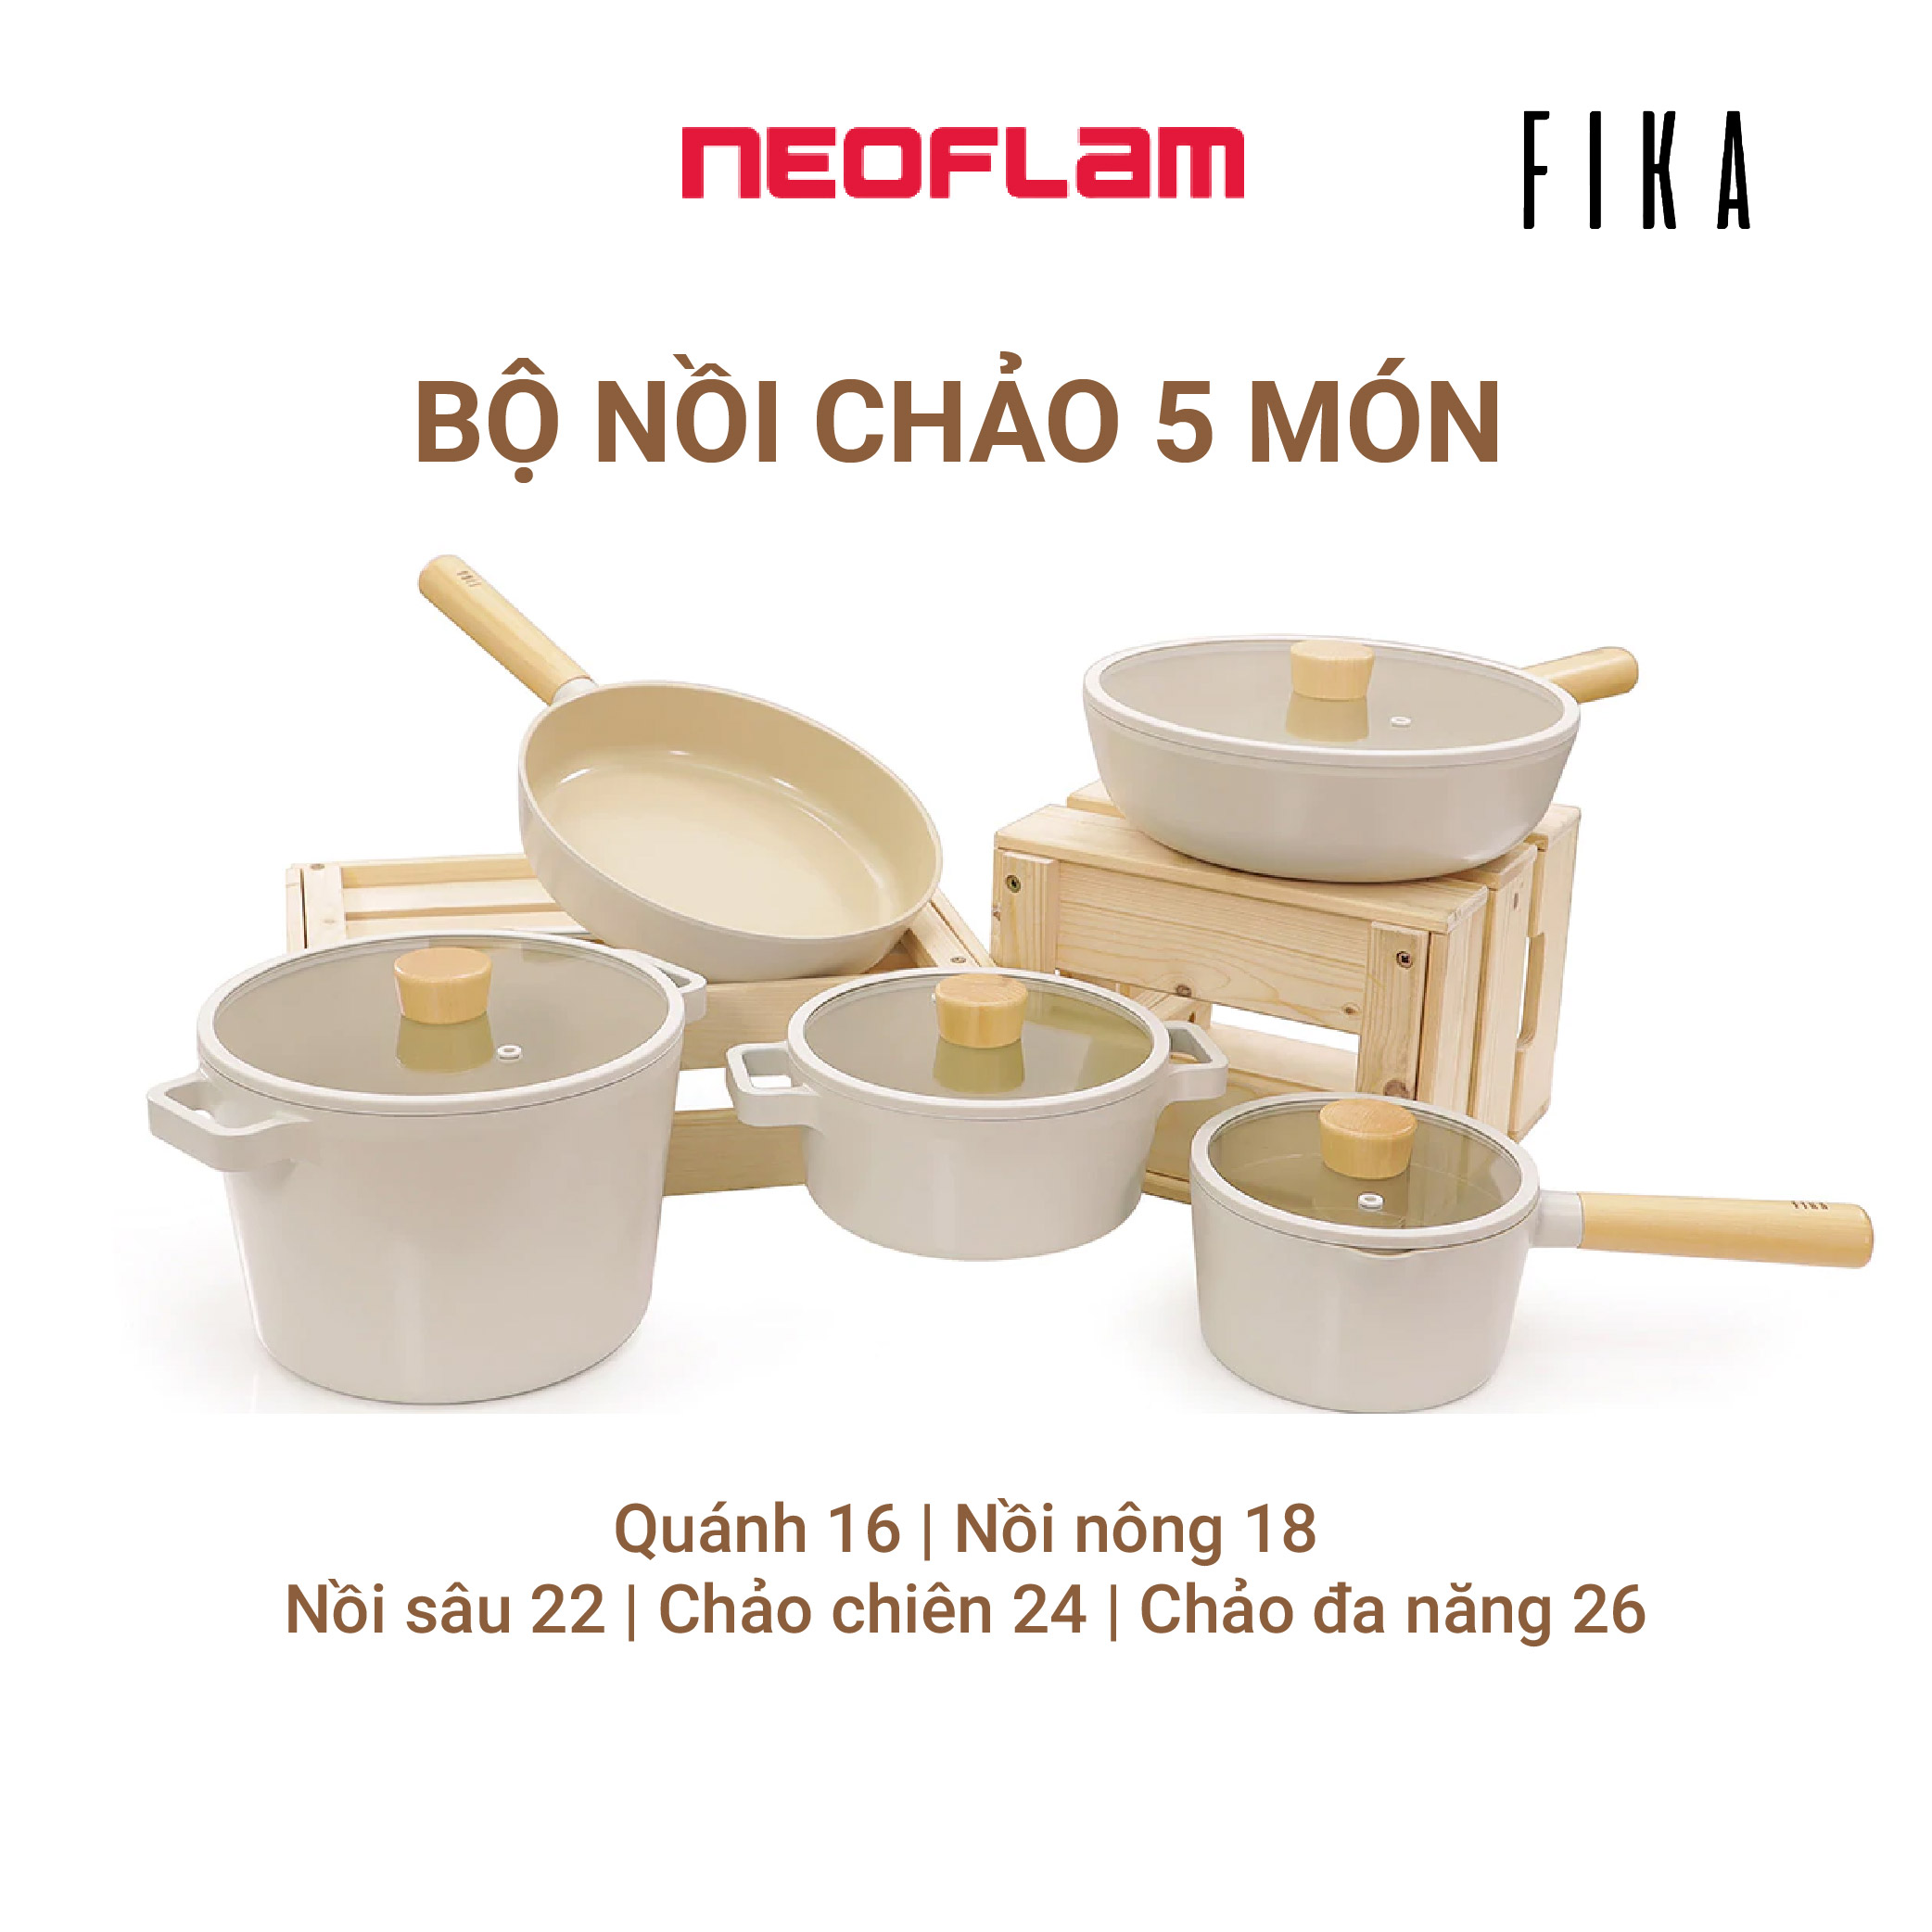 Bộ 5 món nồi chảo chống dính Fika Neoflam - Hàn Quốc (03 phương án lựa chọn), Made in Korea. Hàng có sẵn, giao ngay